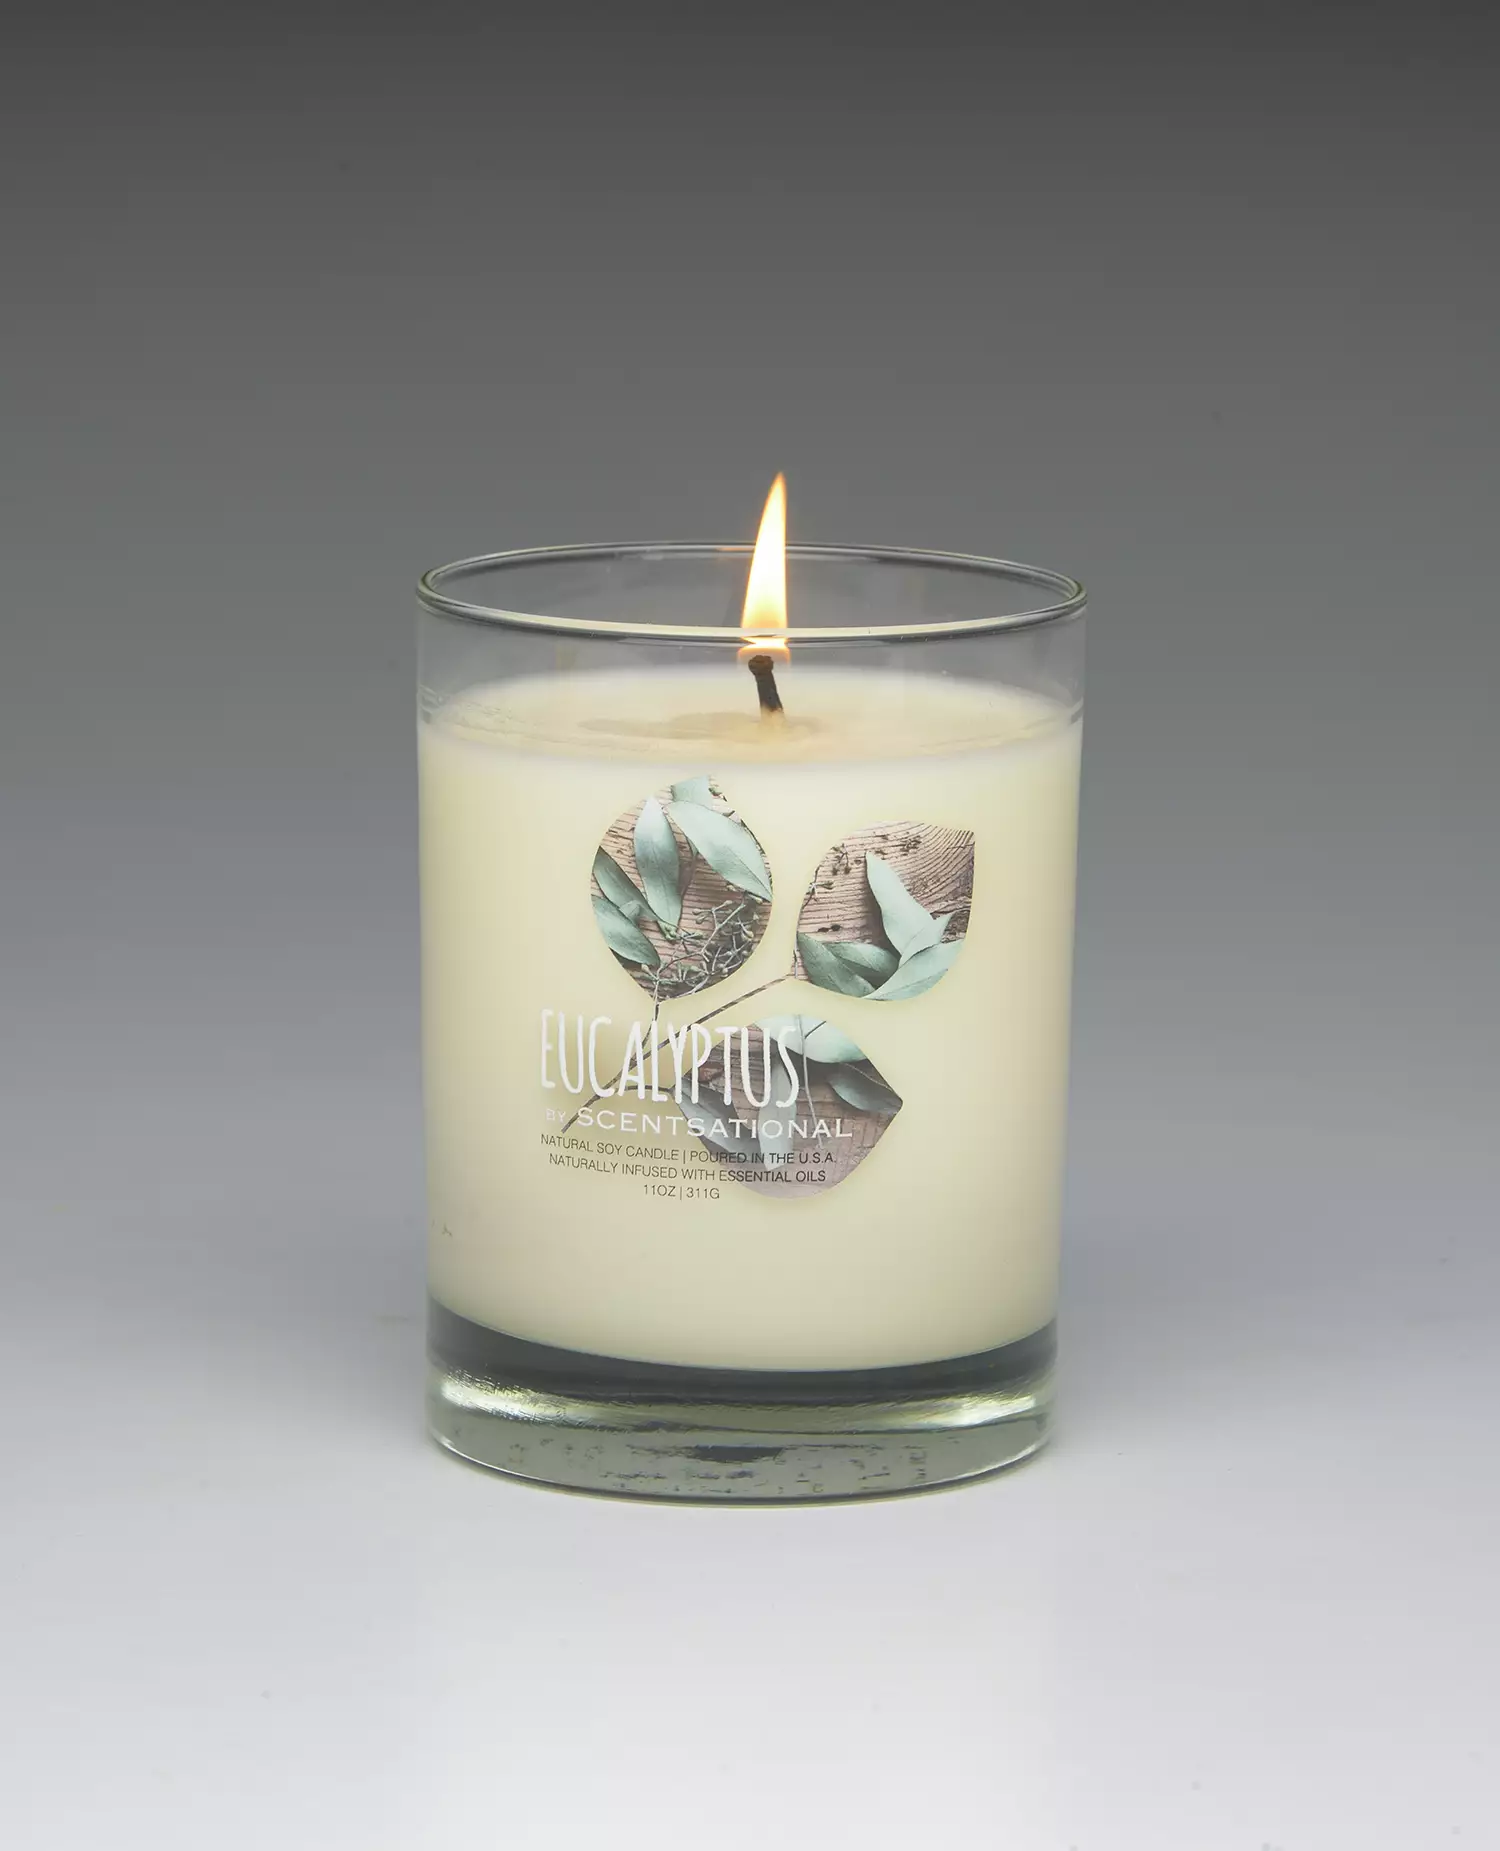 Eucalyptus – 11oz scented candle burning